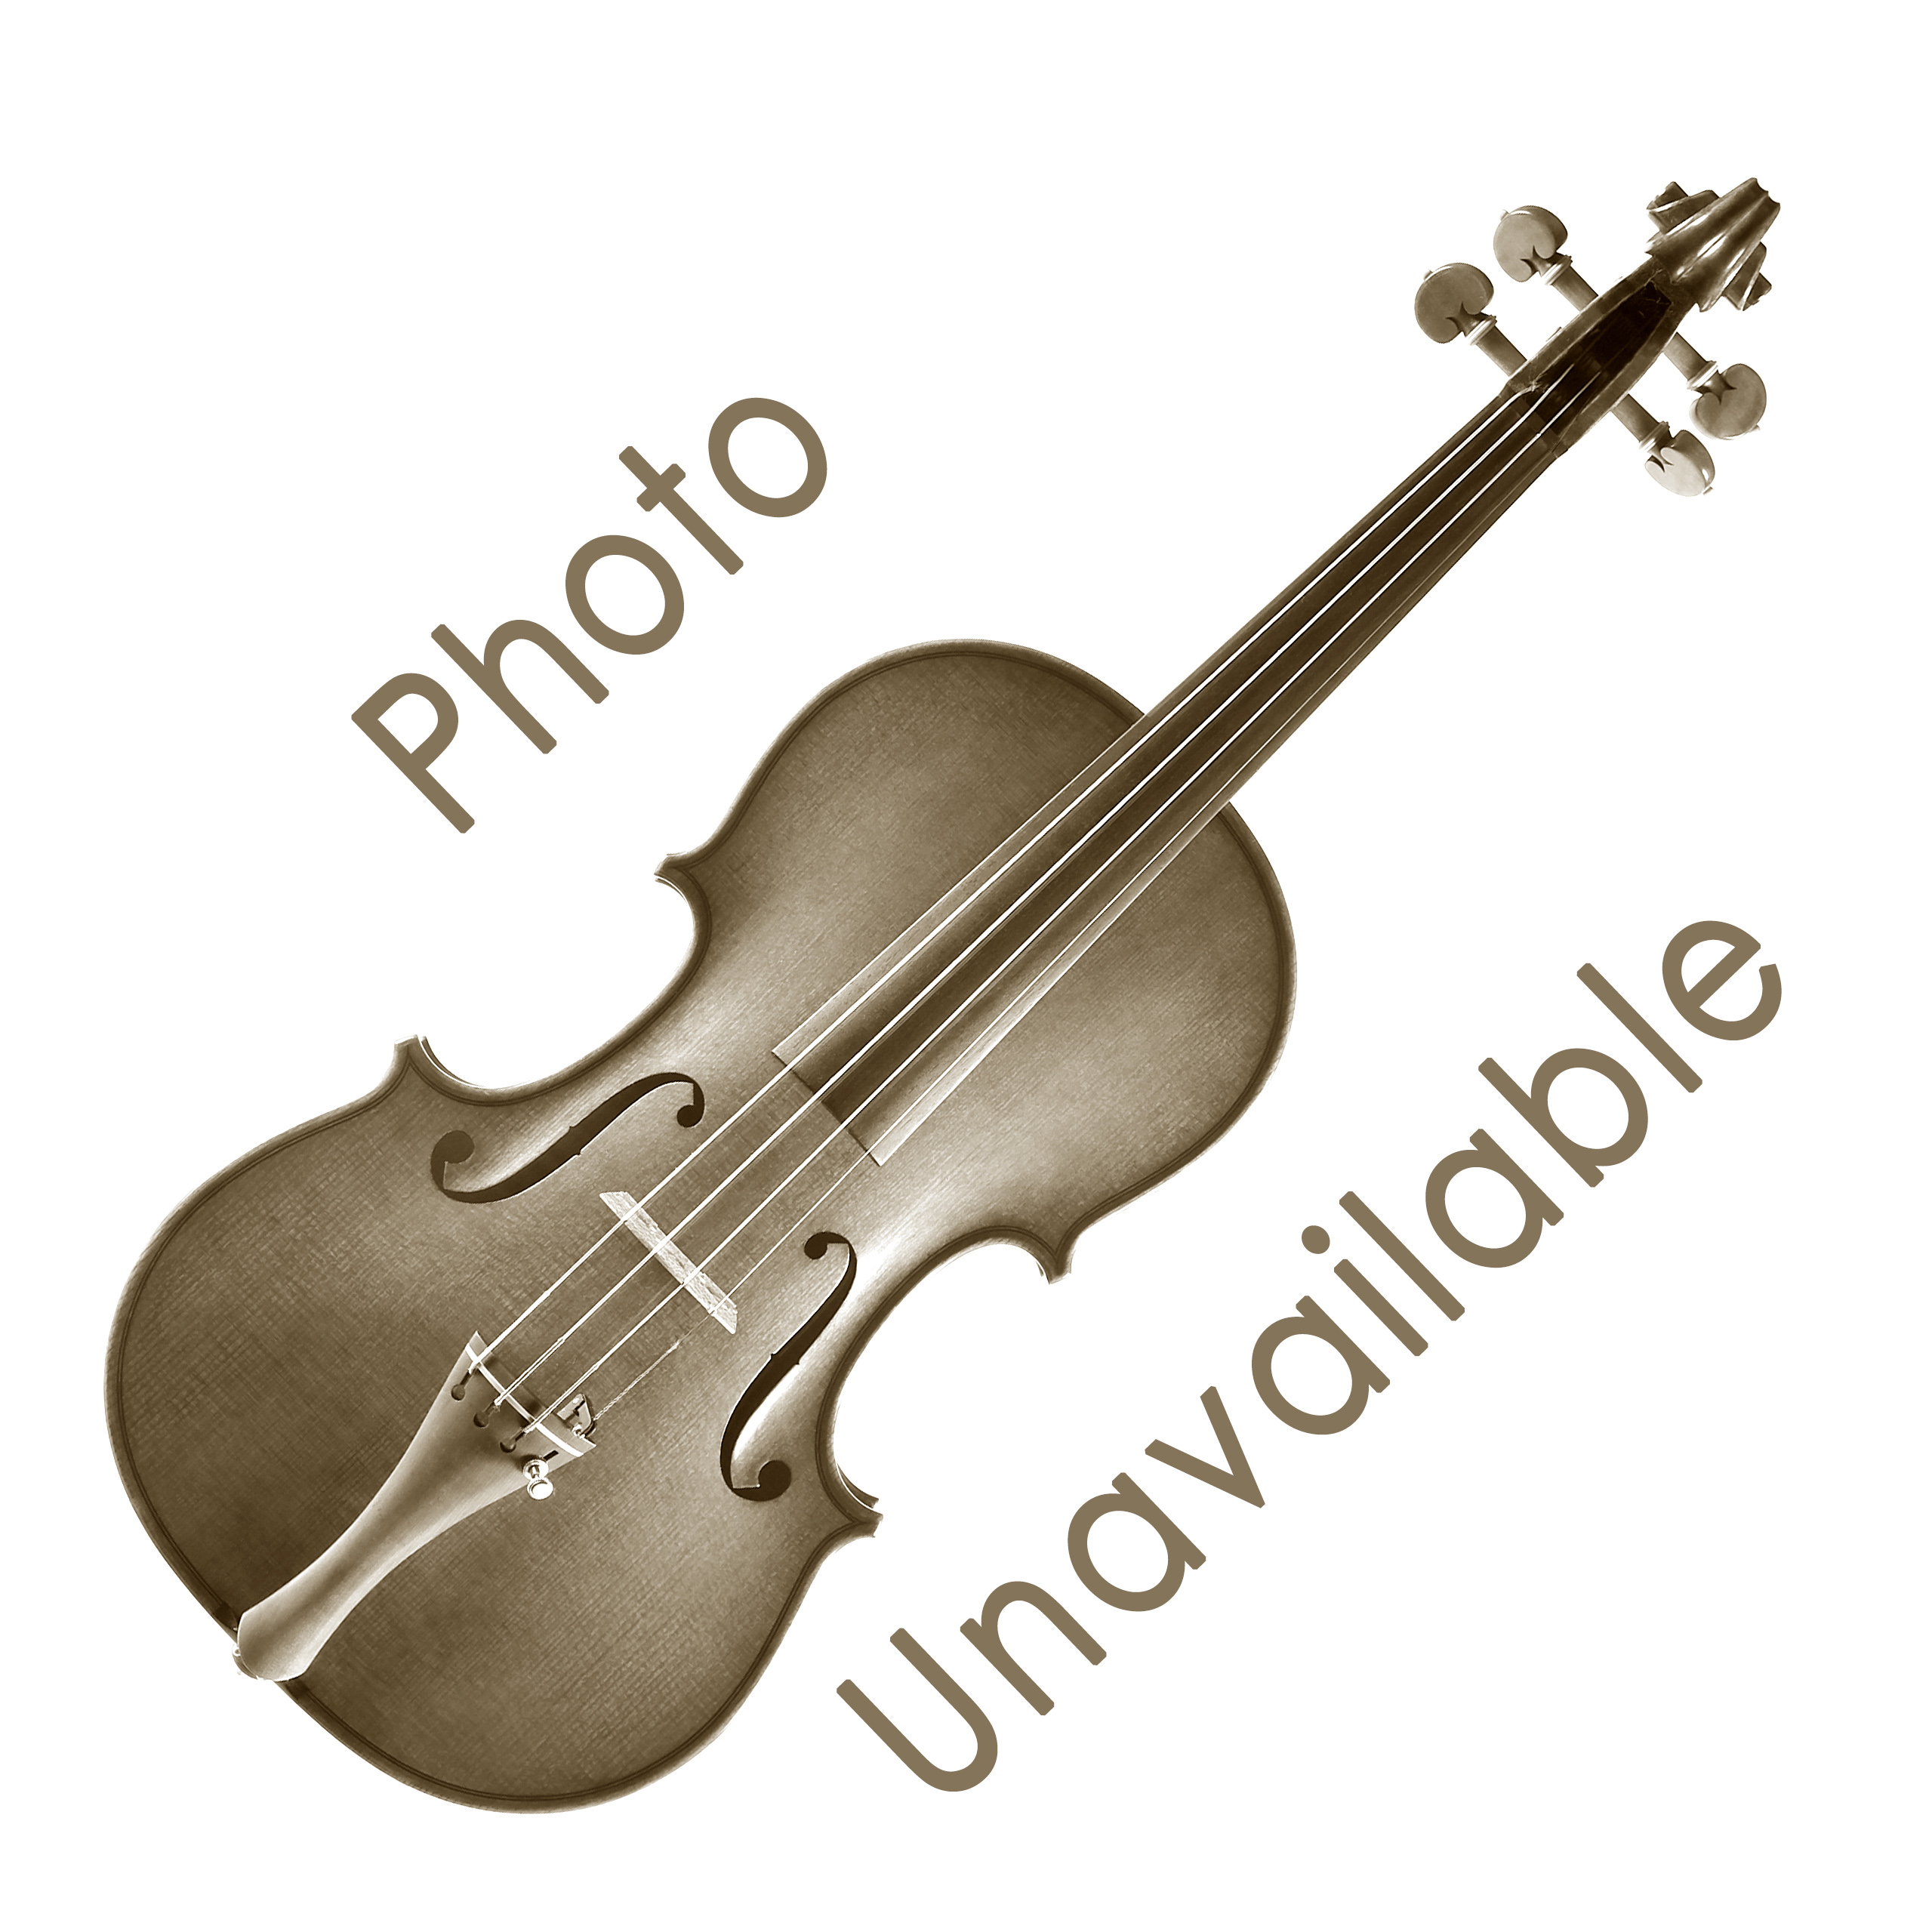 Bon Musica Shoulder Rest for Violin/Viola - Viola over 17-in